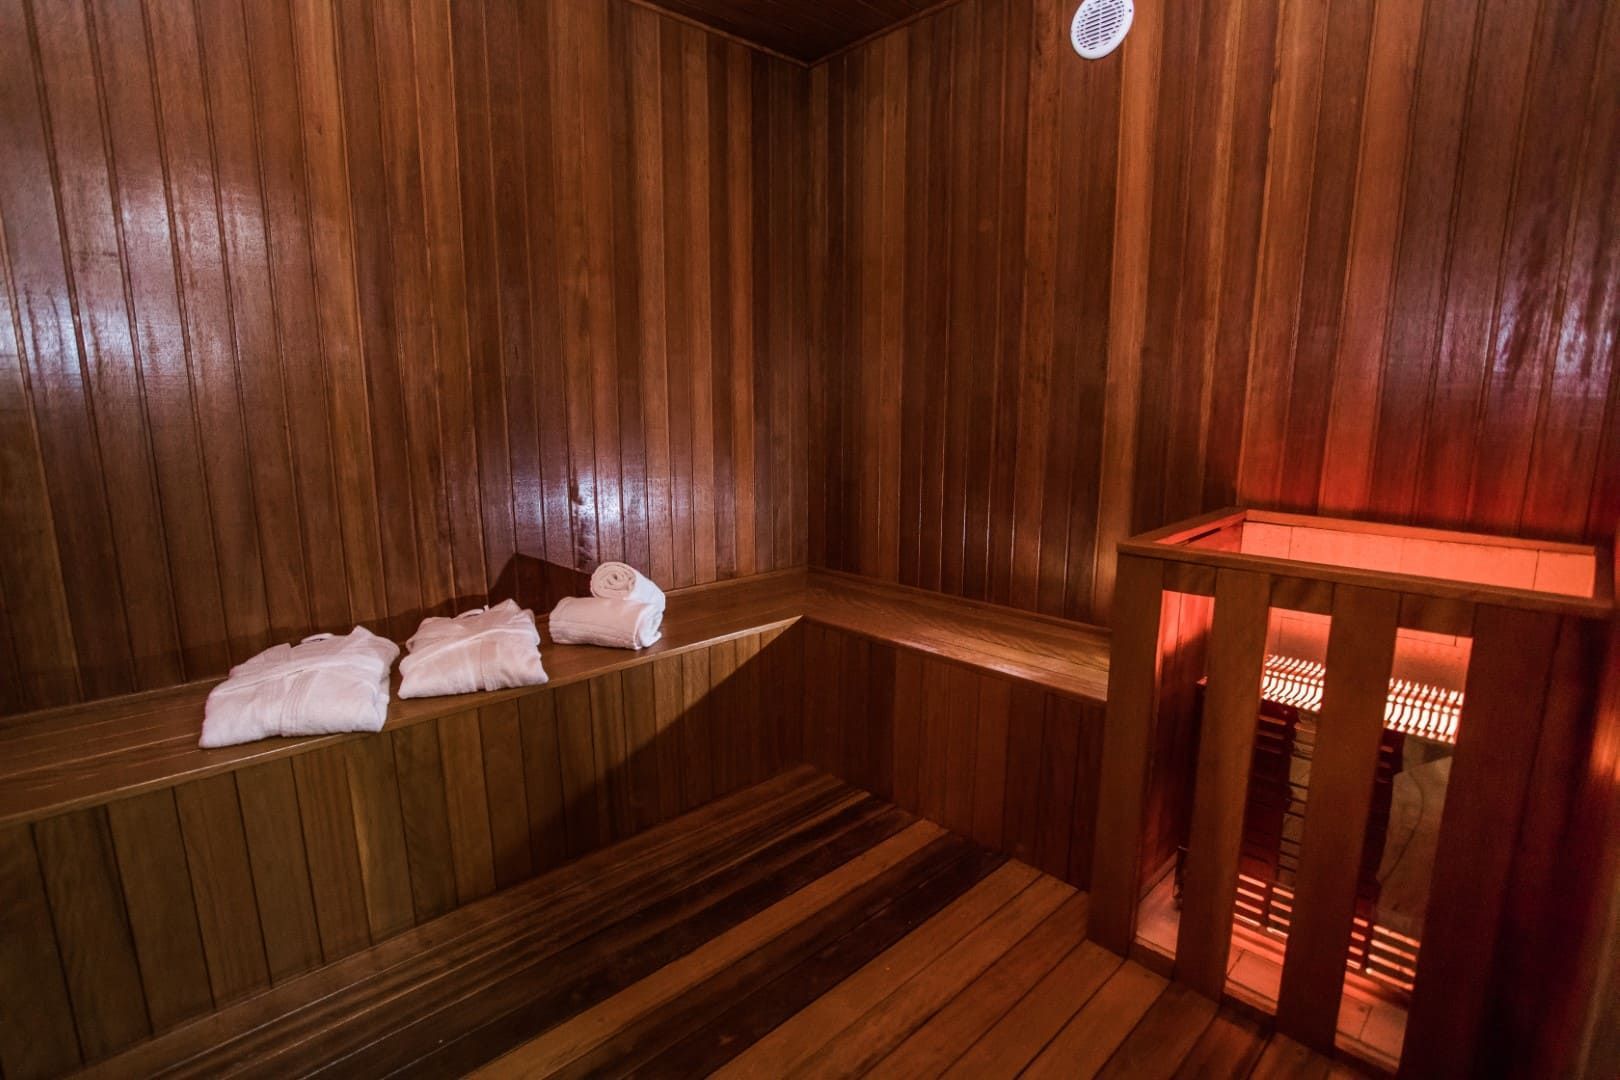 Sauna de madeira com toalhas nos bancos e luz vermelha.